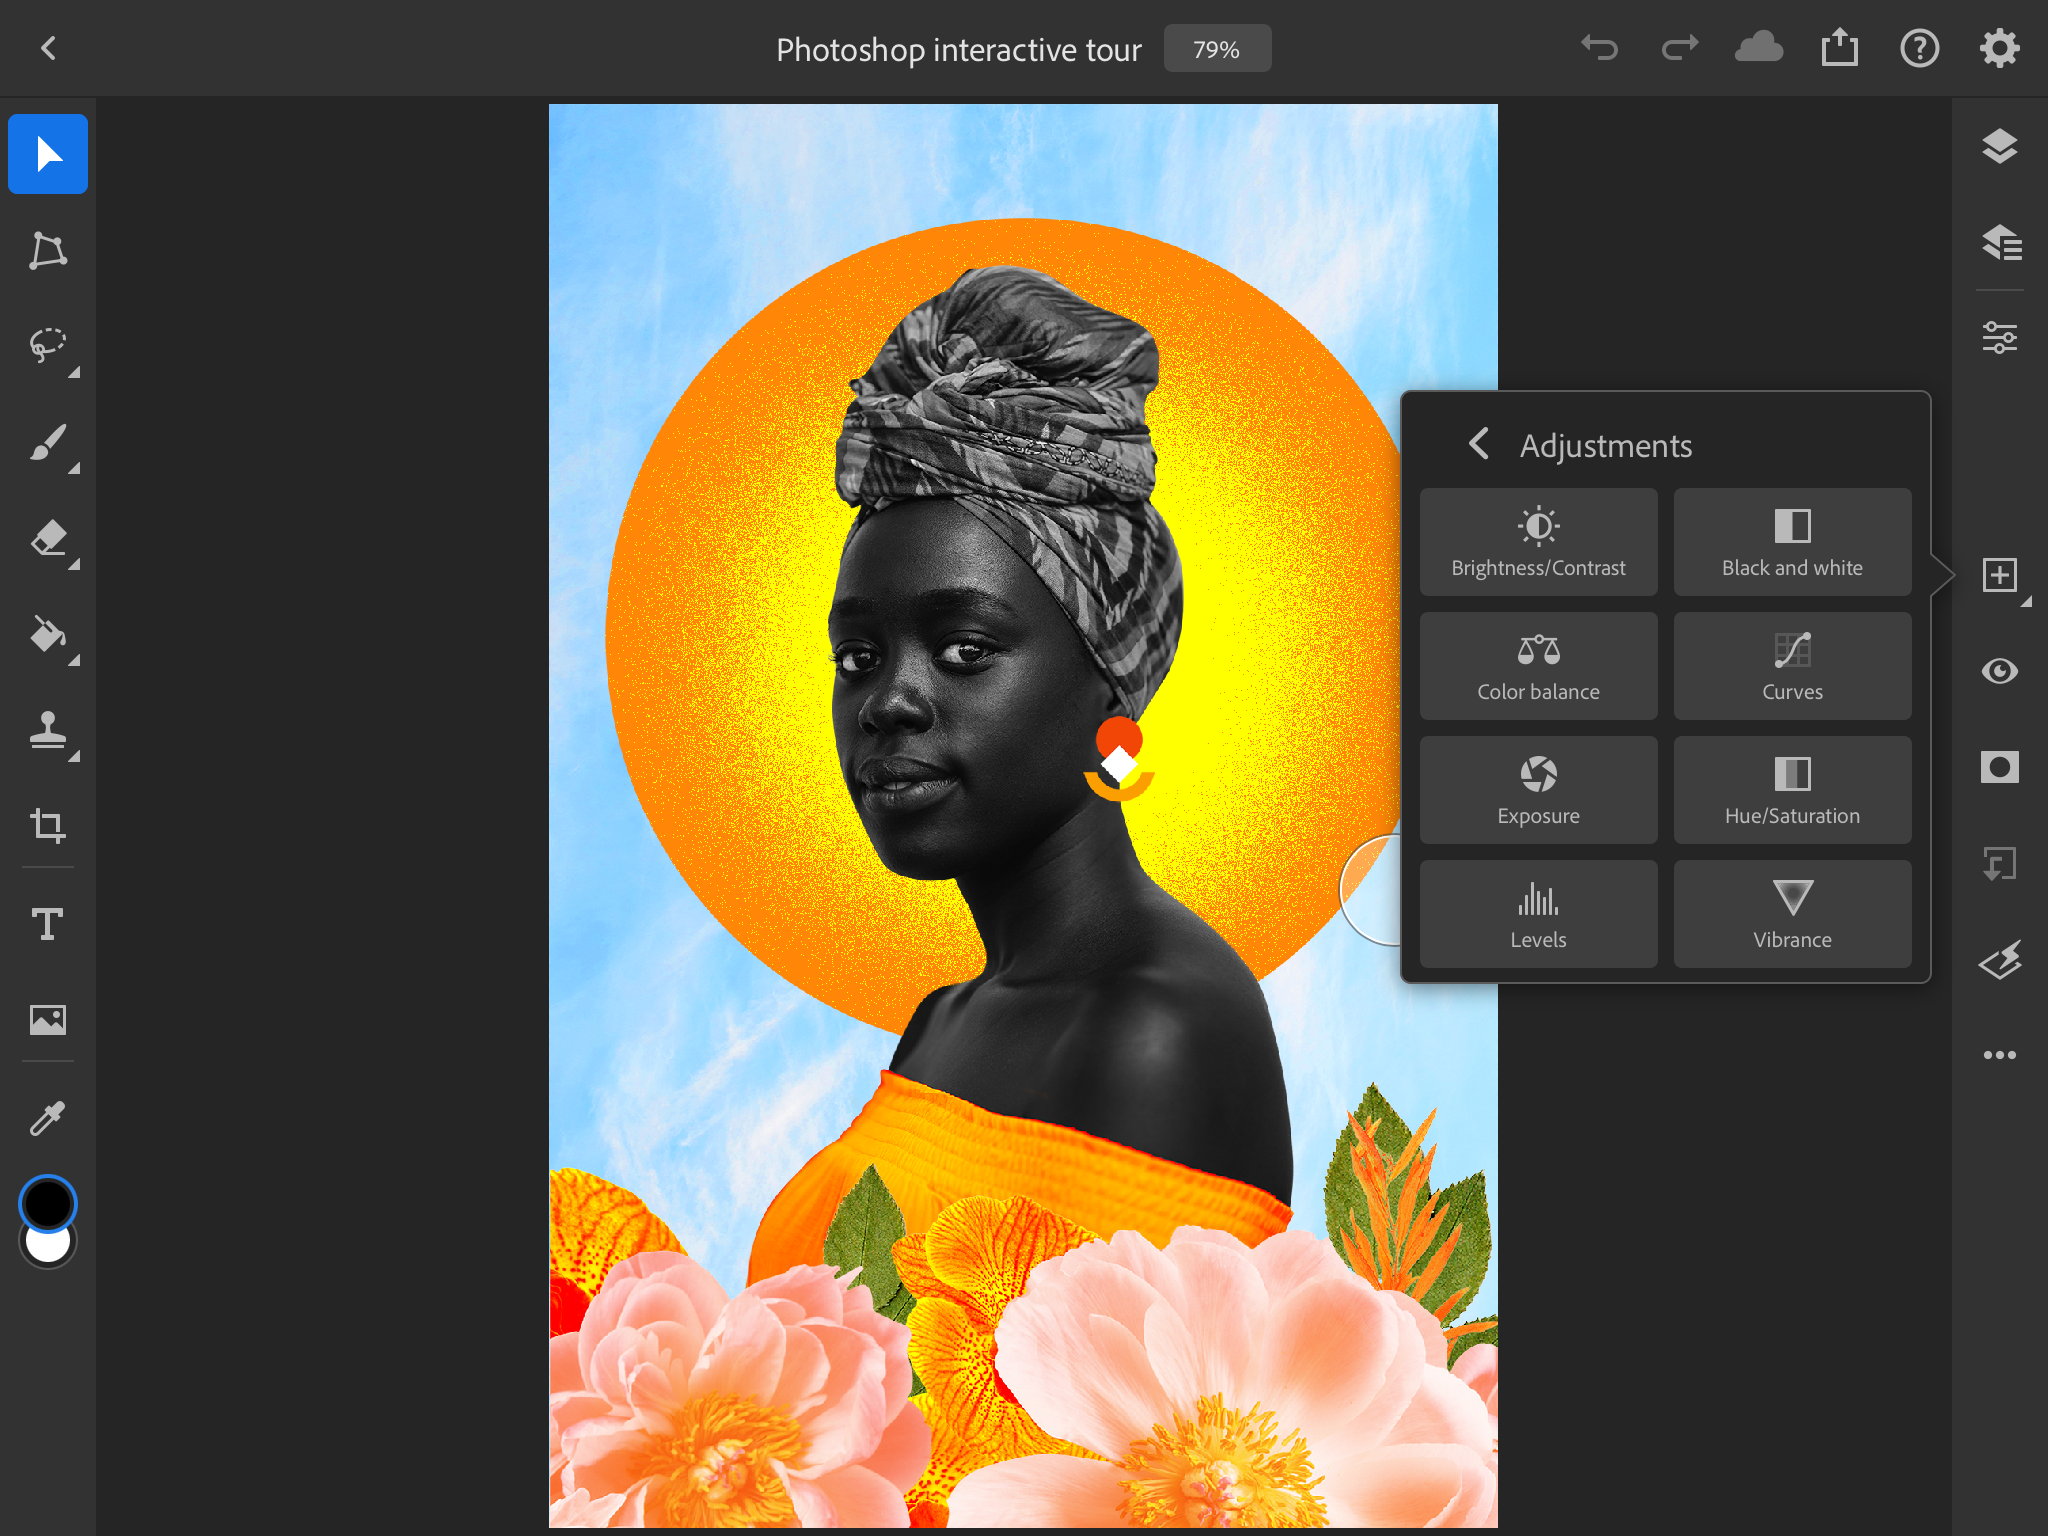 photoshop for ipad UI - Adobe Photoshop per iPad e Affinity Photo per iPad: qual è il migliore?